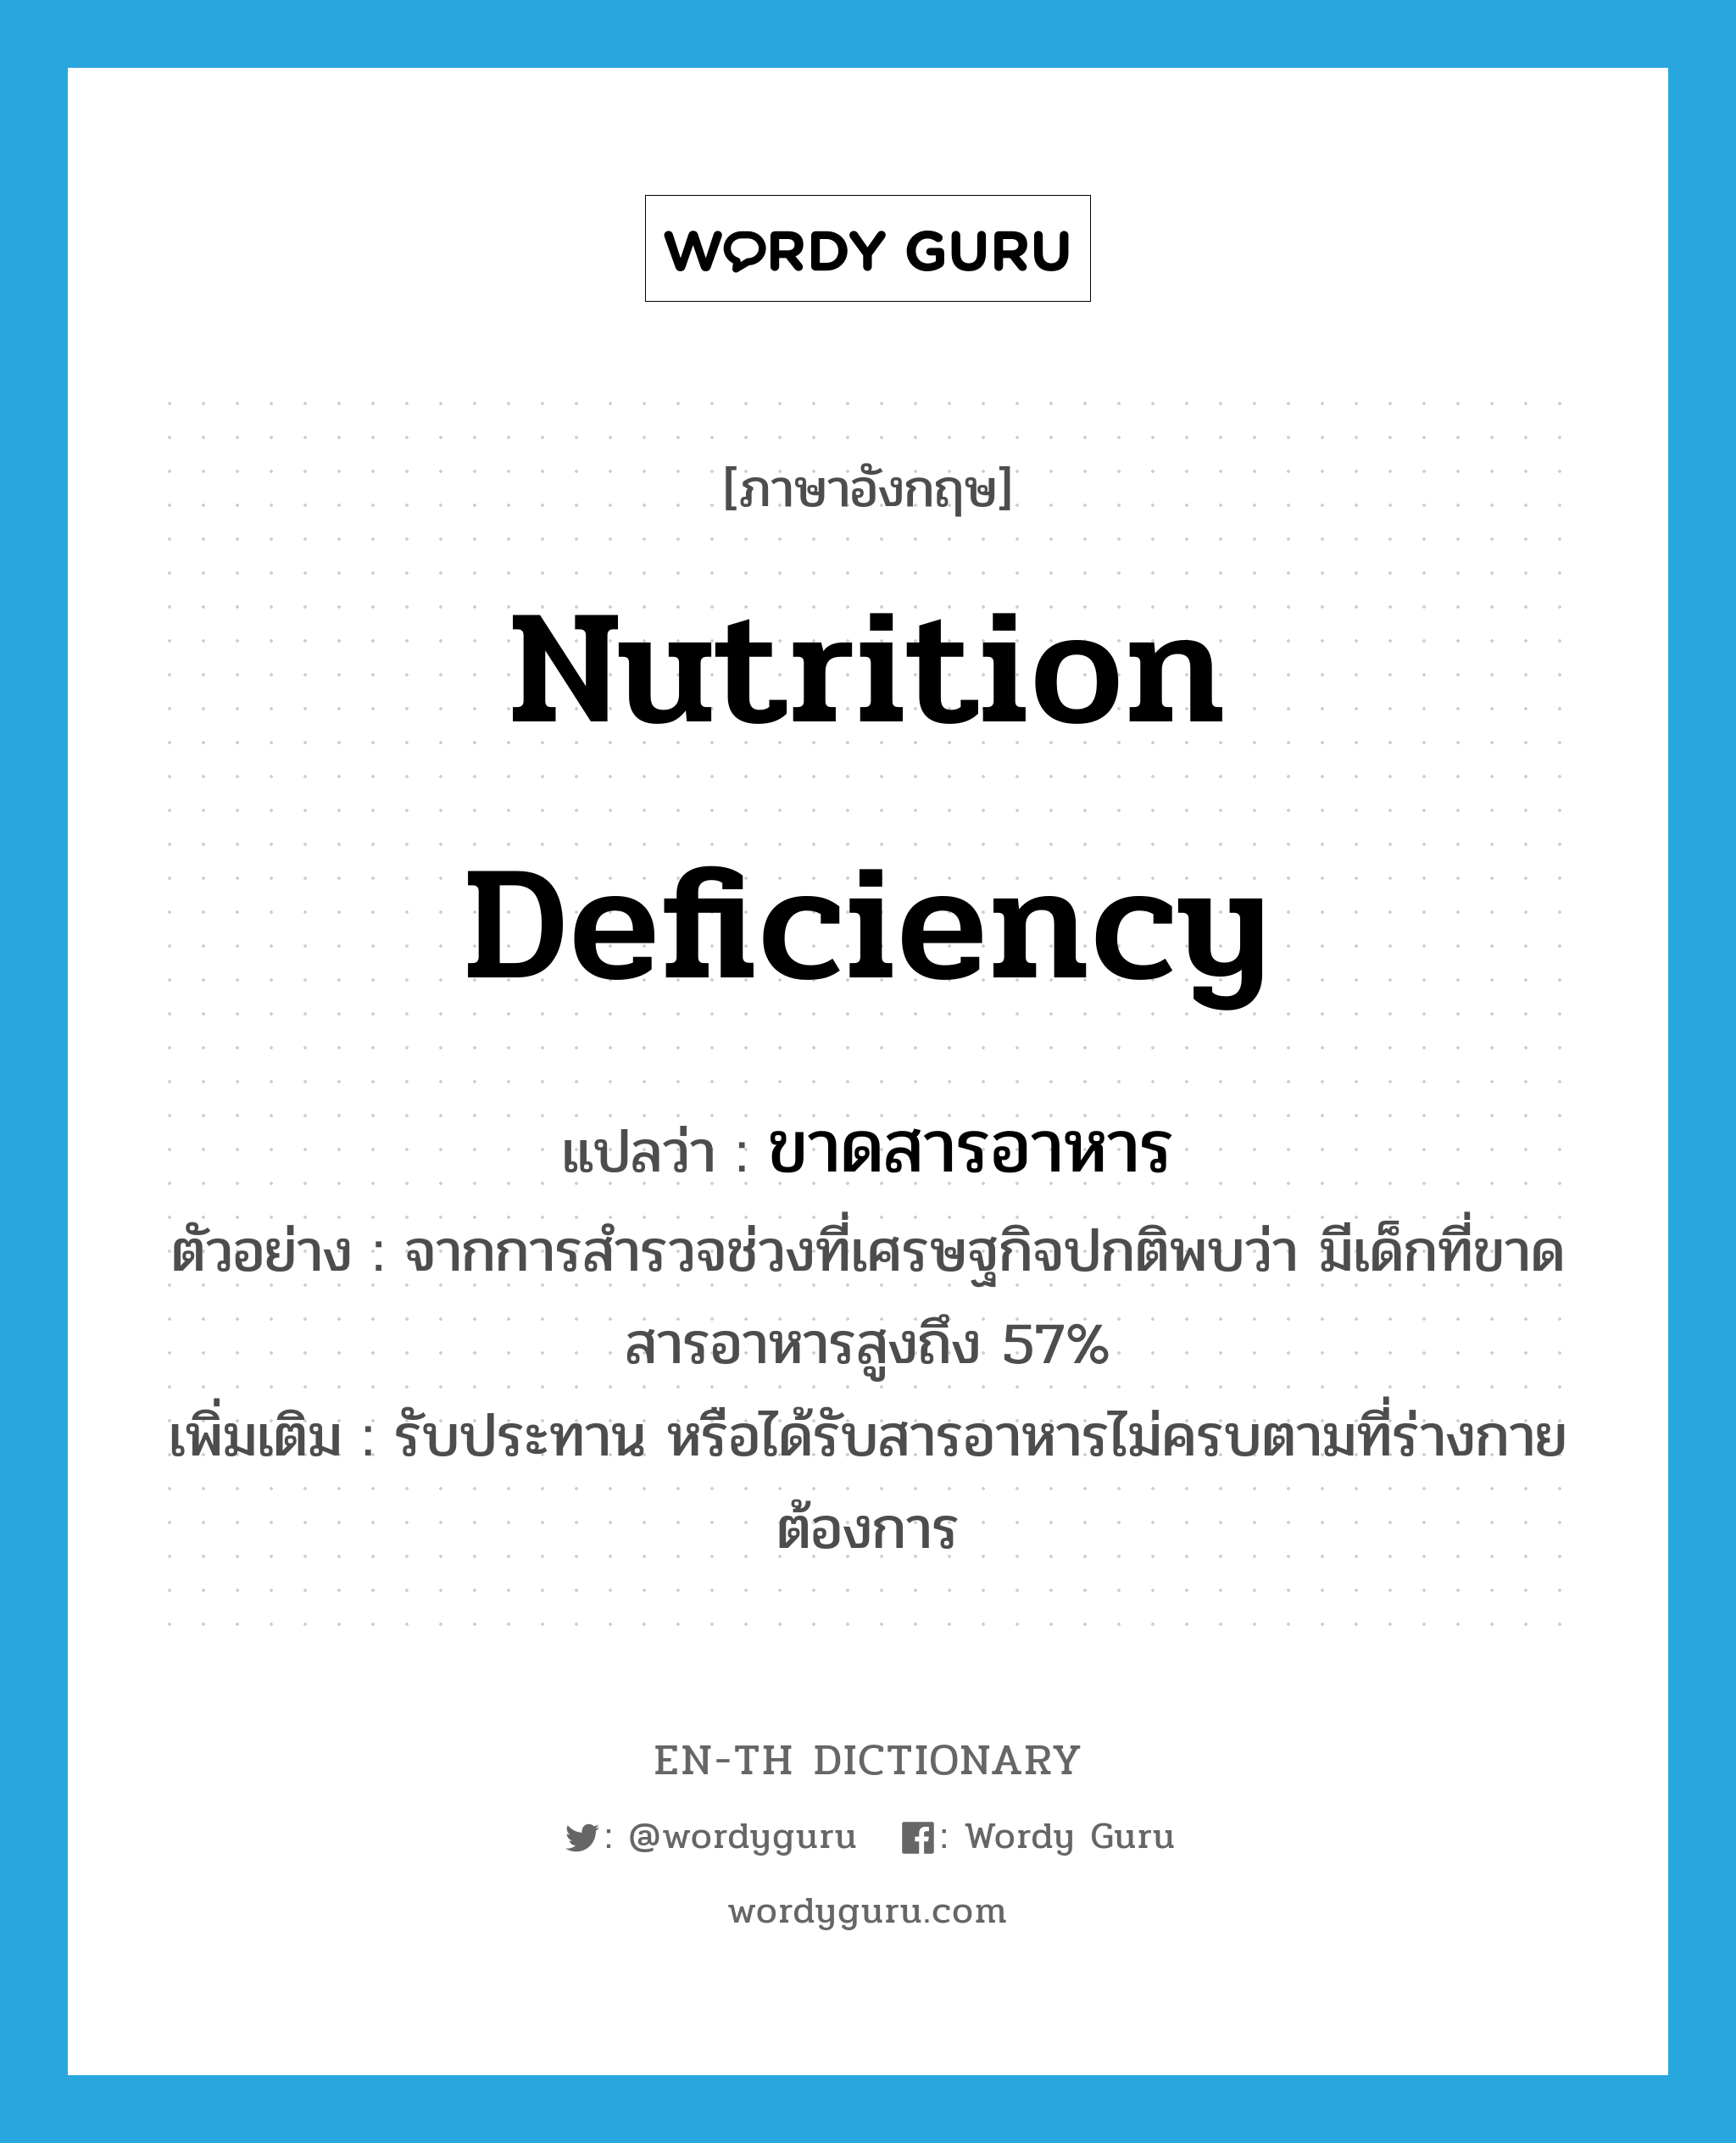 nutrition deficiency แปลว่า?, คำศัพท์ภาษาอังกฤษ nutrition deficiency แปลว่า ขาดสารอาหาร ประเภท V ตัวอย่าง จากการสำรวจช่วงที่เศรษฐกิจปกติพบว่า มีเด็กที่ขาดสารอาหารสูงถึง 57% เพิ่มเติม รับประทาน หรือได้รับสารอาหารไม่ครบตามที่ร่างกายต้องการ หมวด V